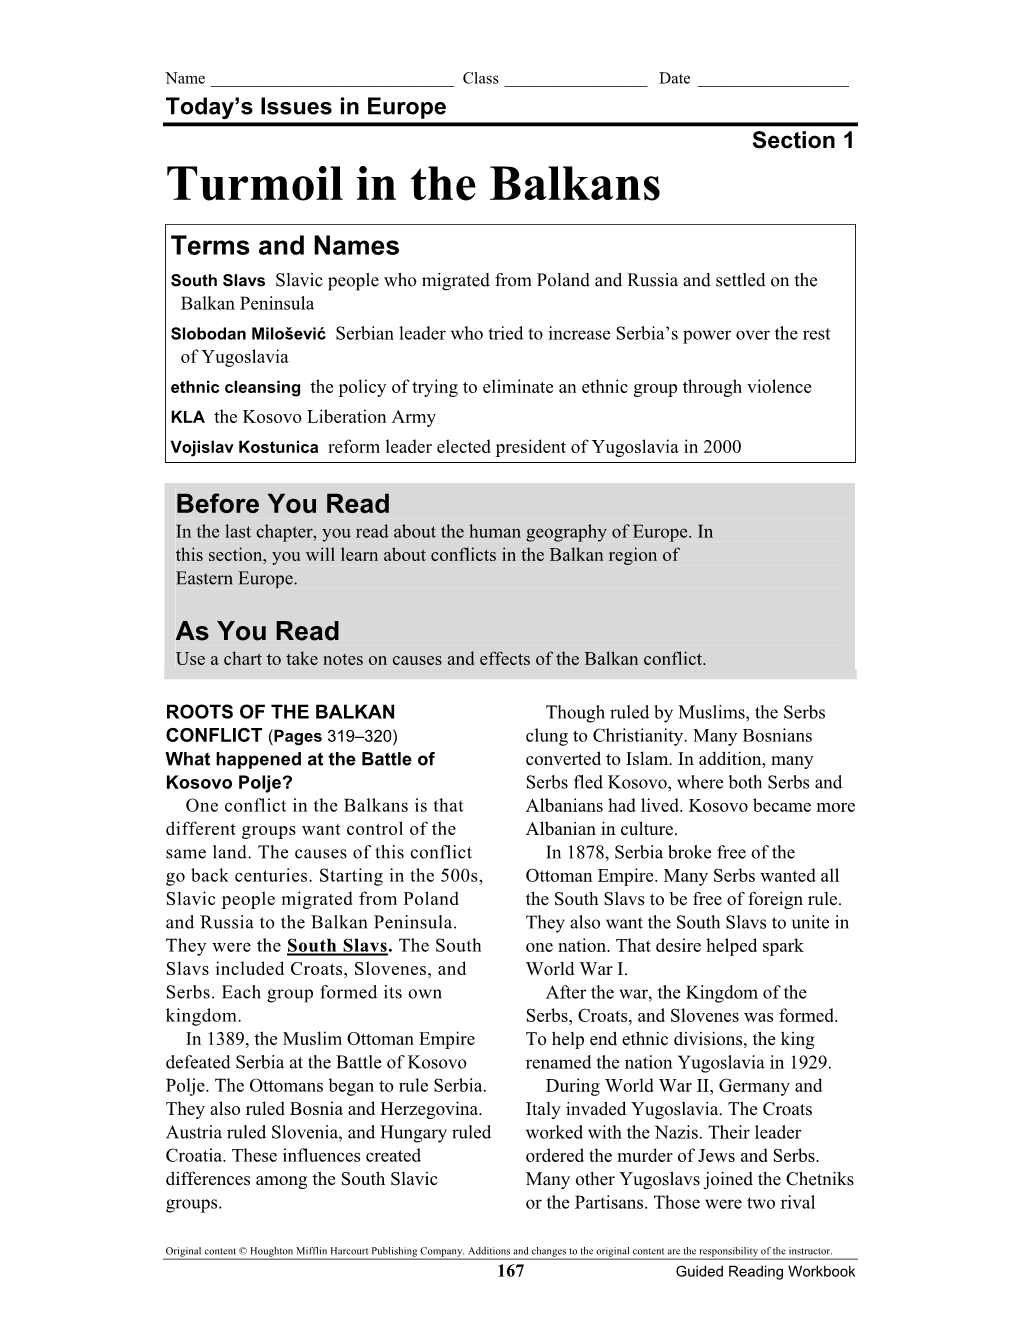 Turmoil in the Balkans